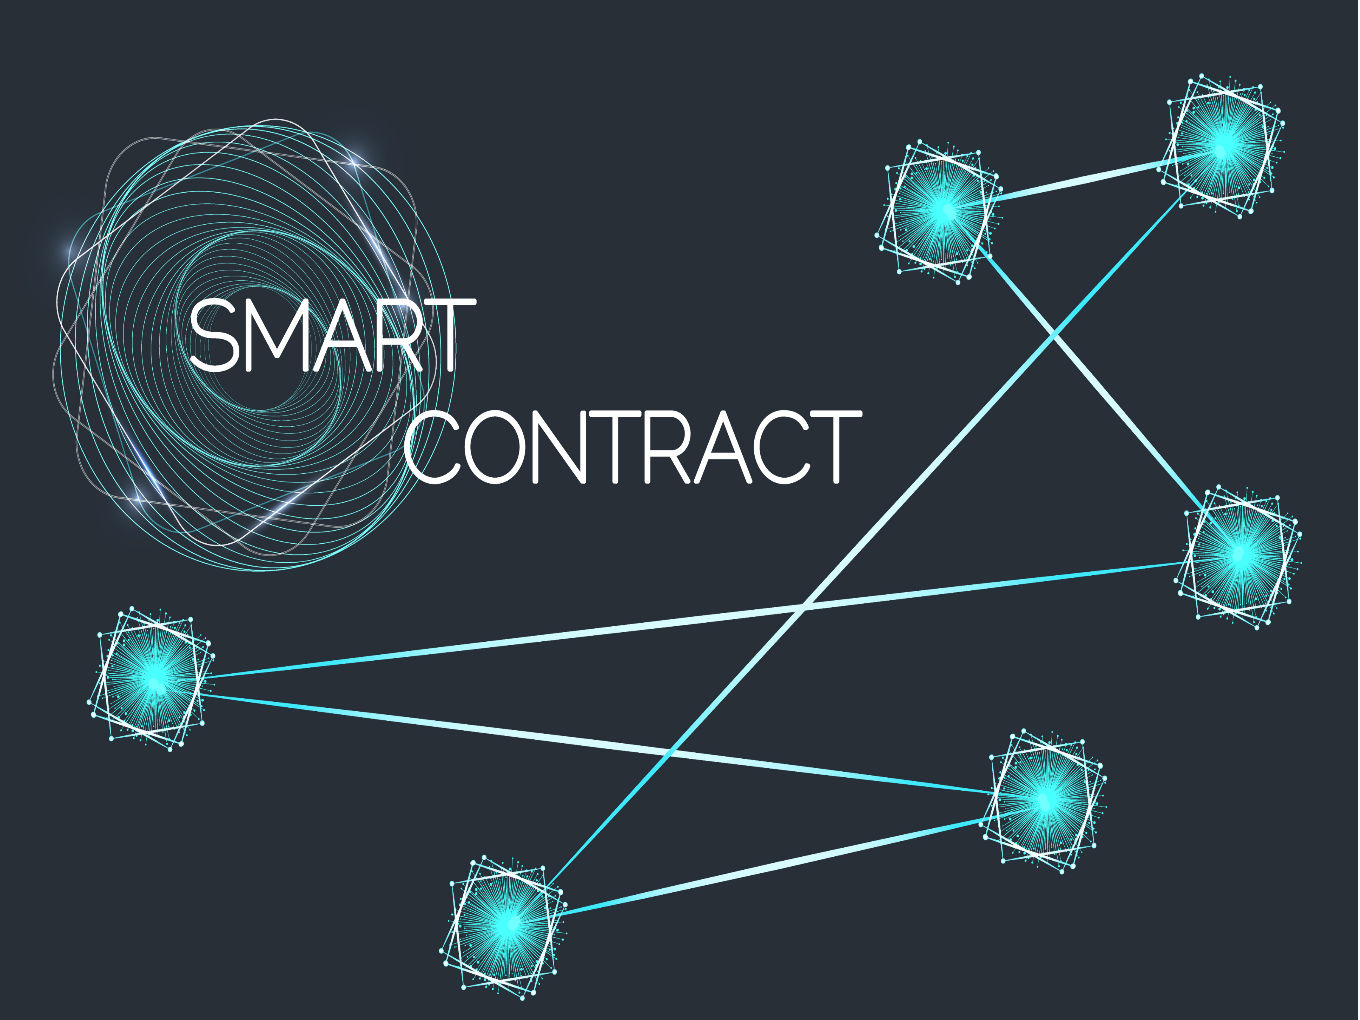 ¿Cuál es la utilidad real de los smart contracts o contratos inteligentes para una empresa en la actualidad?